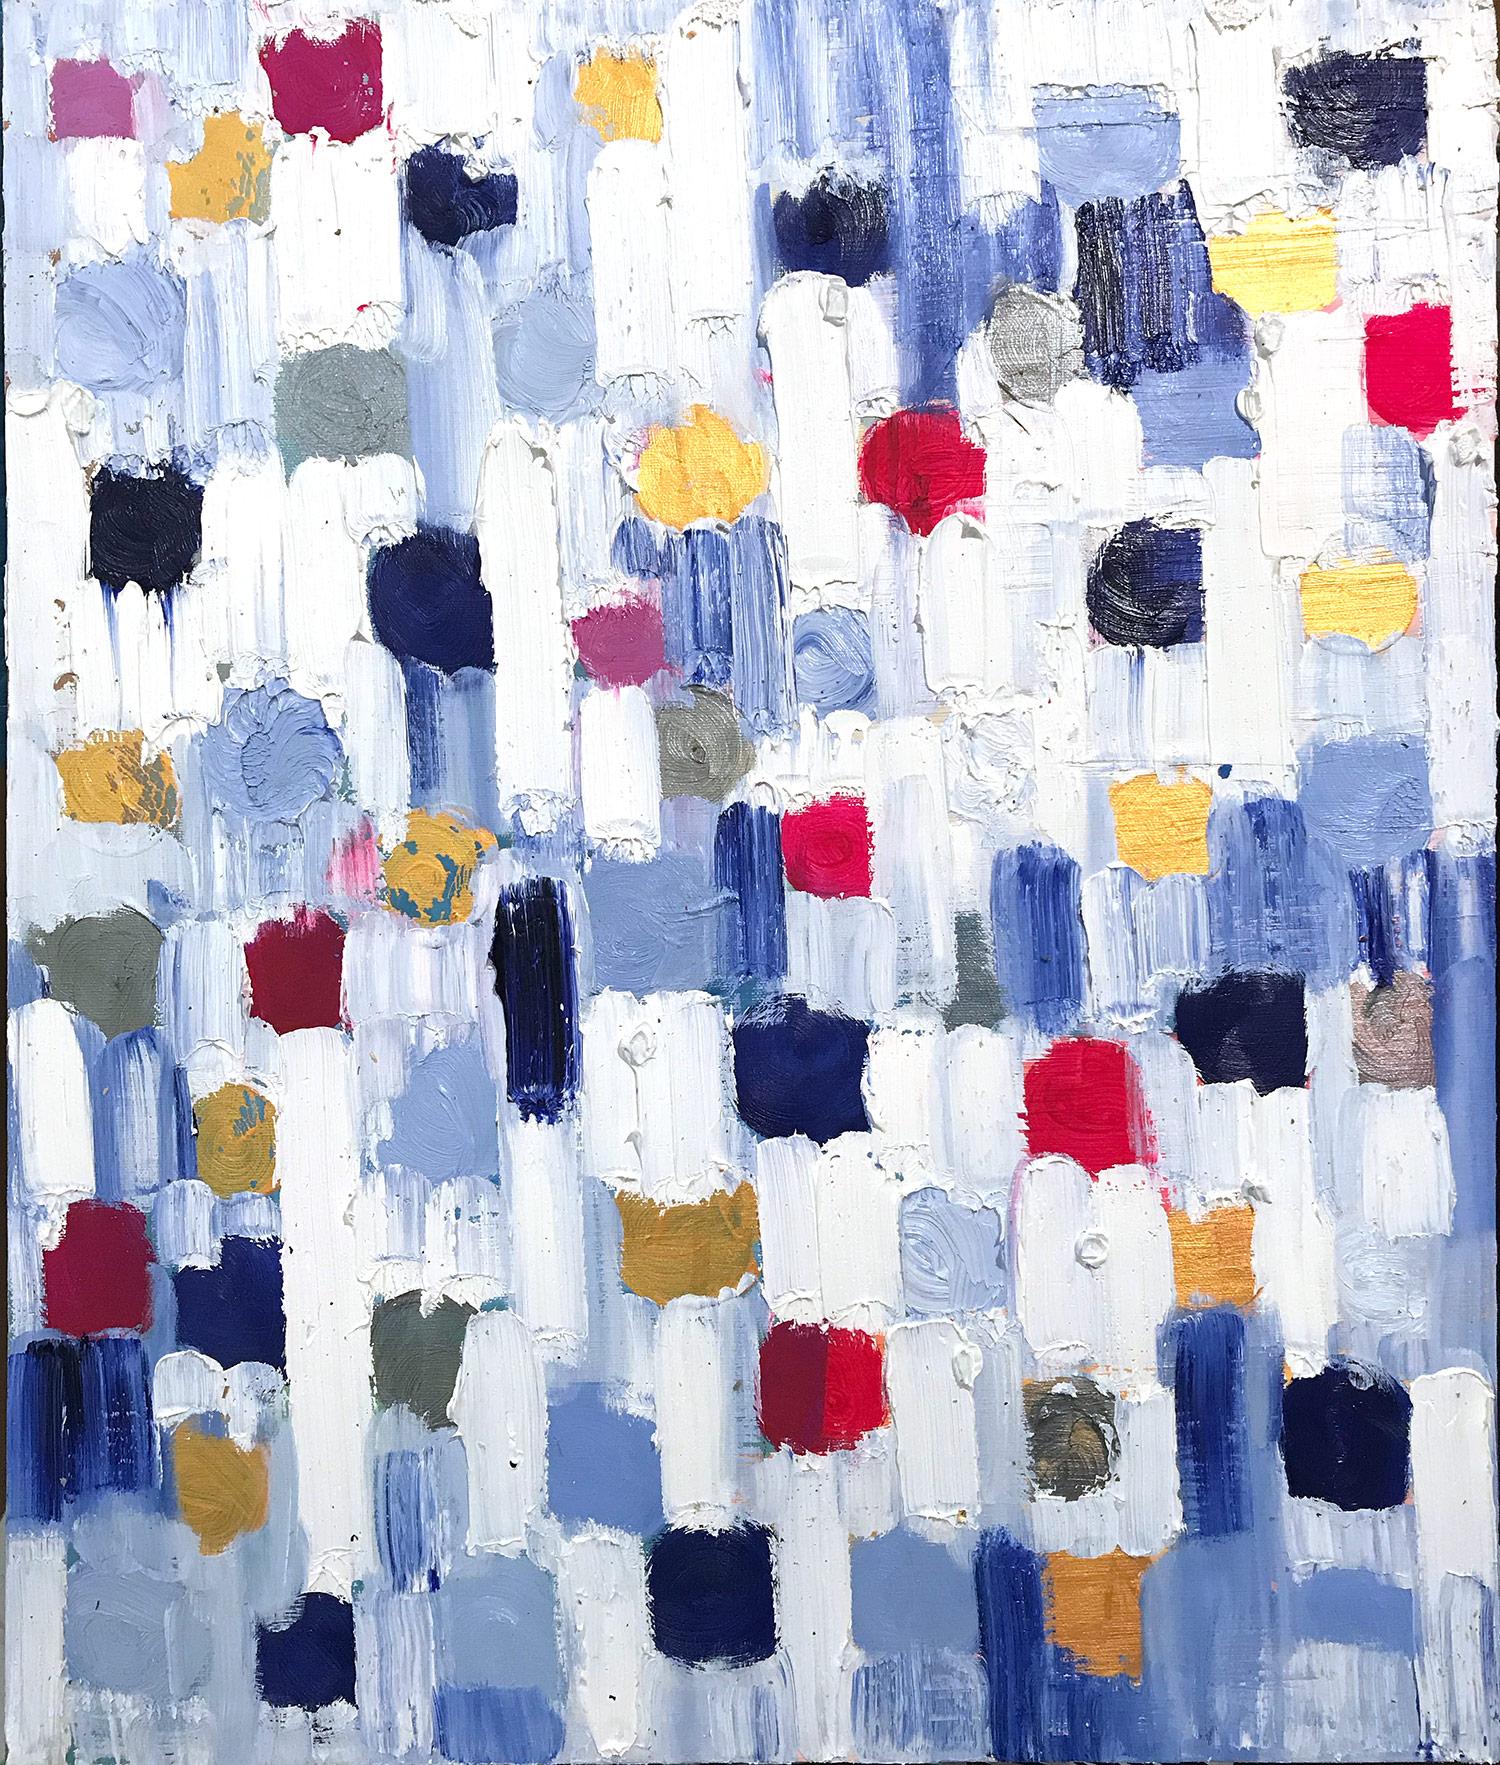 Abstract Painting Cindy Shaoul - "Dripping Dots - Espagne" - Peinture à l'huile abstraite colorée sur toile